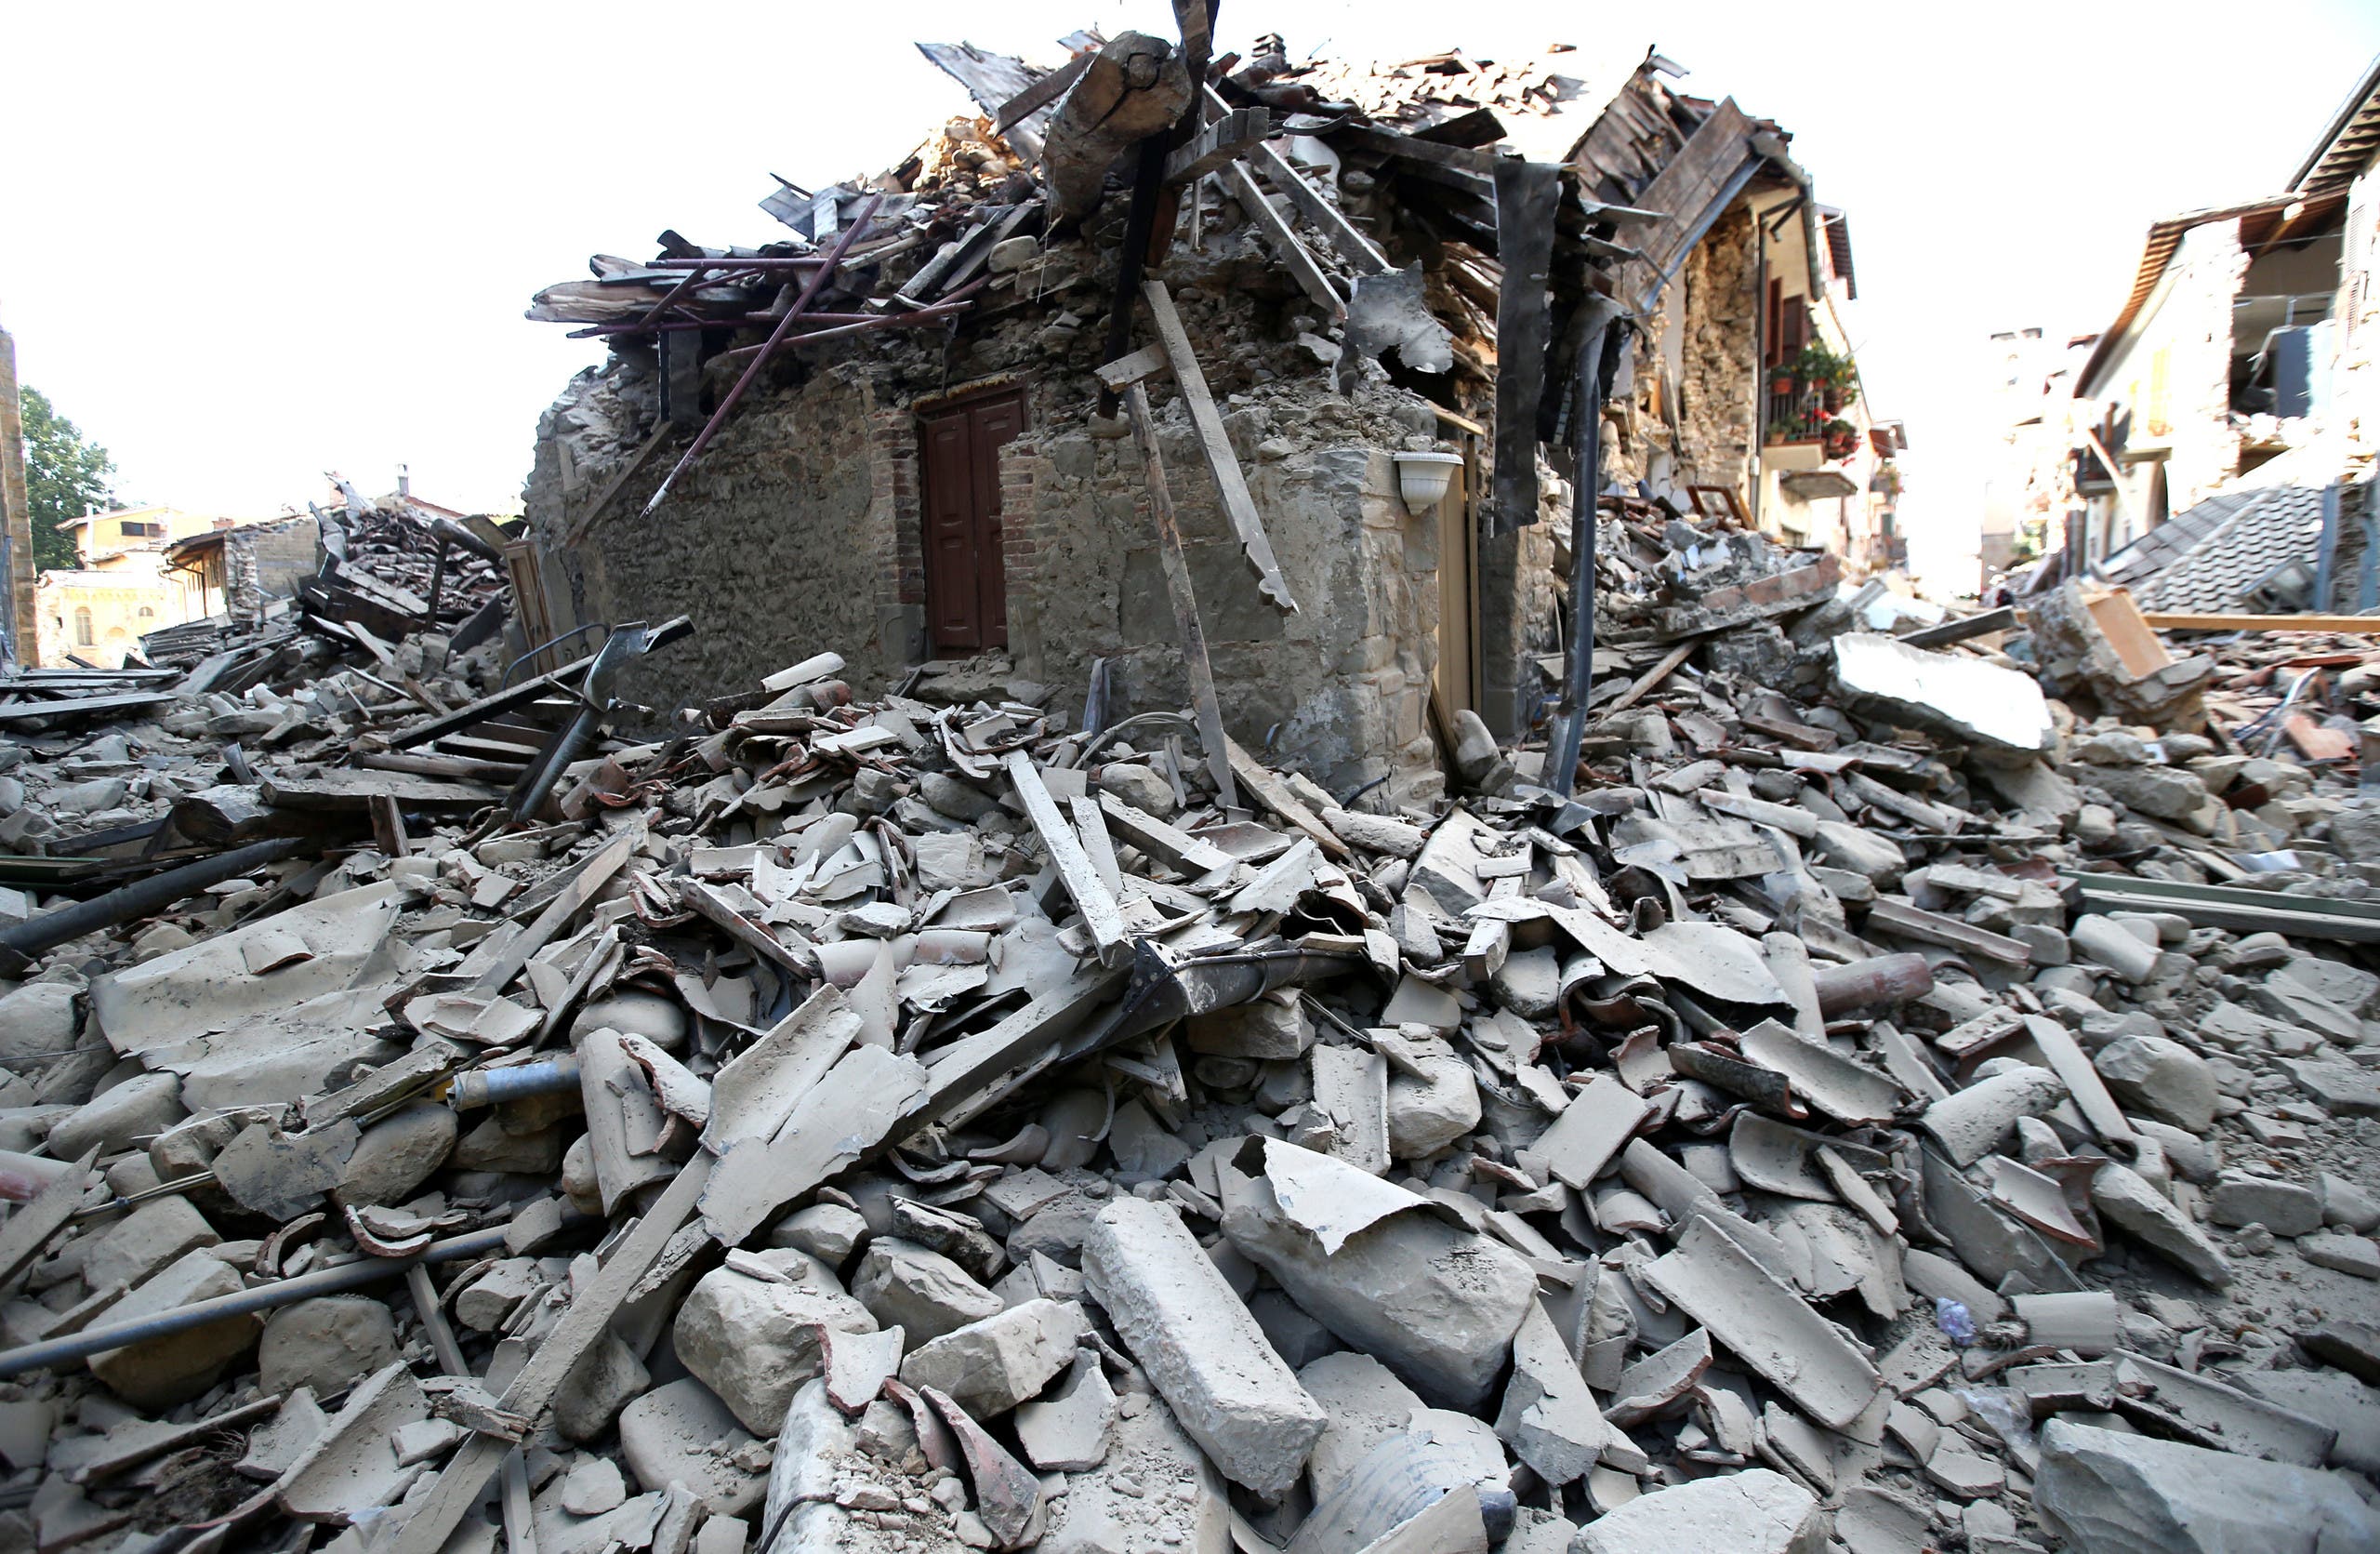 وكان زلزال سابق بقوة 6.3 درجة قد أوقع أكثر من 300 قتيل في منطقة اكيلا (وسط) في أبريل 2009.